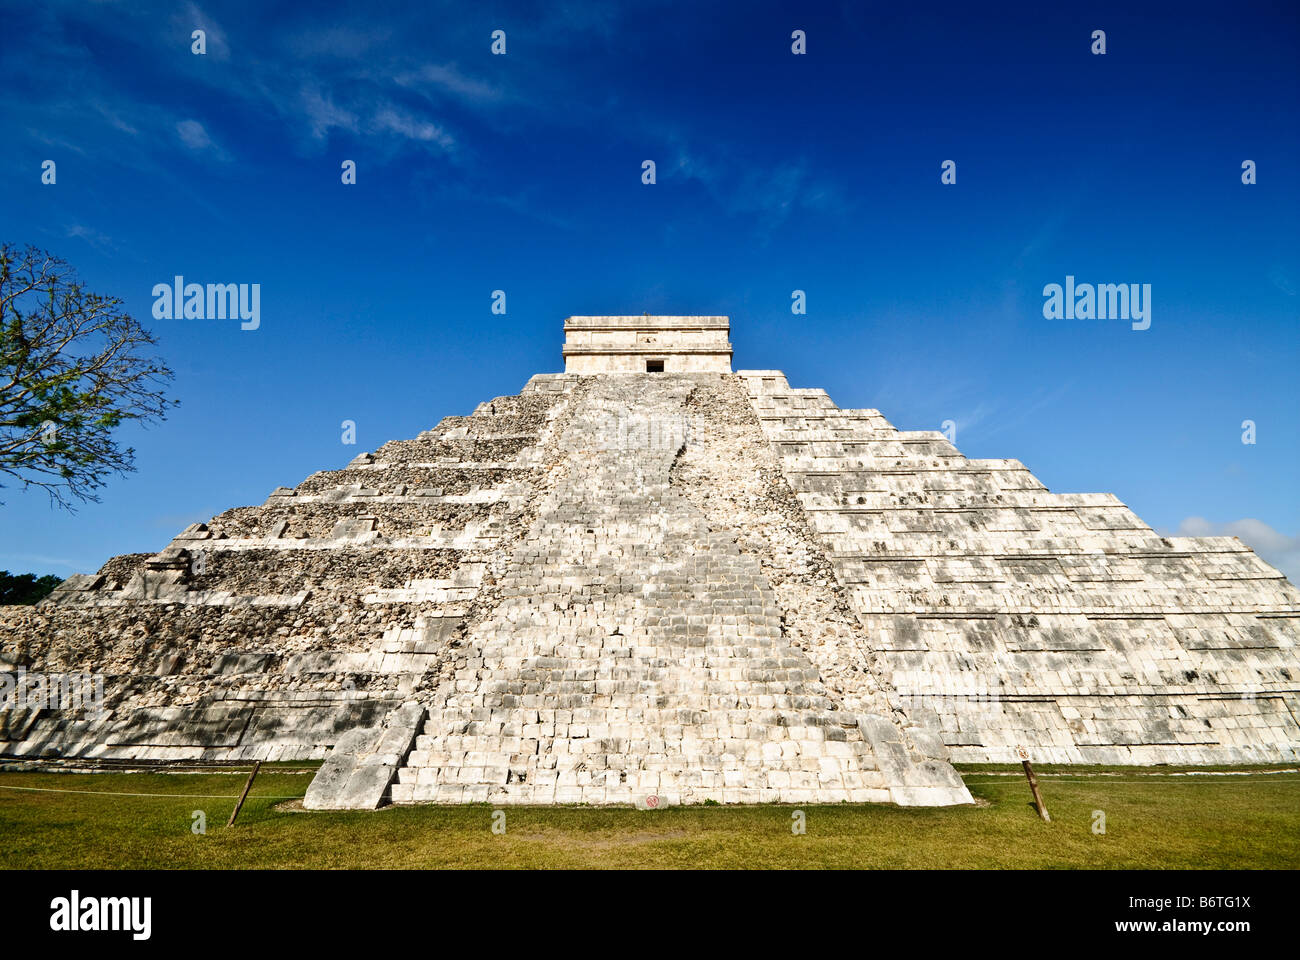 CHICHEN ITZA, Mexique - El Castillo (également connu sous le nom de Temple d'Kuklcan) à l'ancienne ruines mayas de Chichen Itza, Yucatan, Mexique 081216092634 1915.NEF Banque D'Images